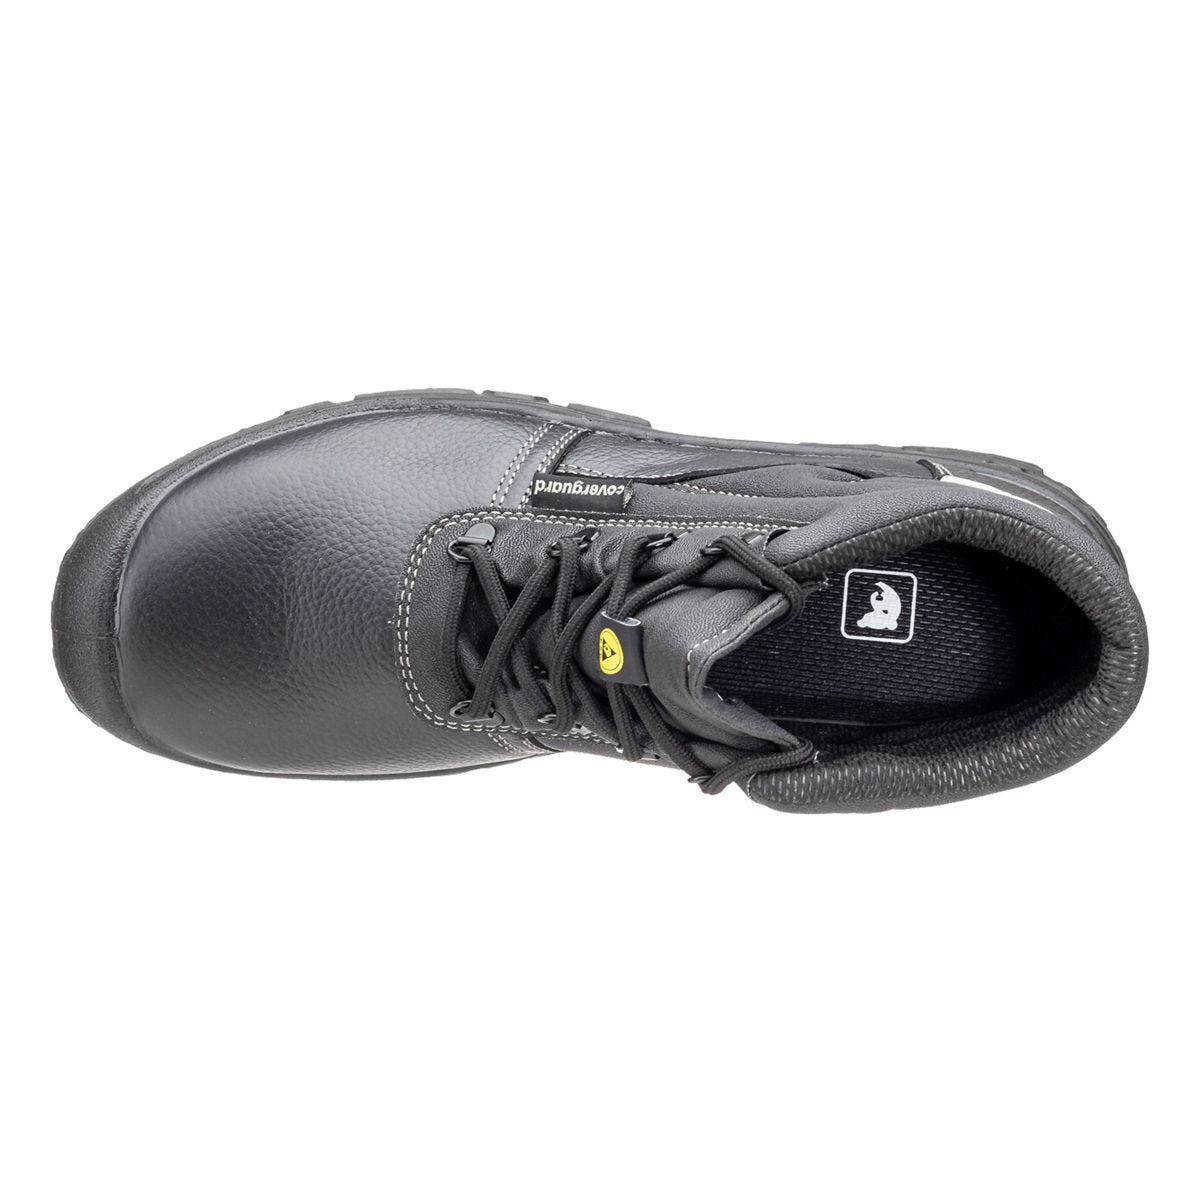 Chaussures de sécurité hautes Azurite II S3 ESD noir - Coverguard - Taille 48 3